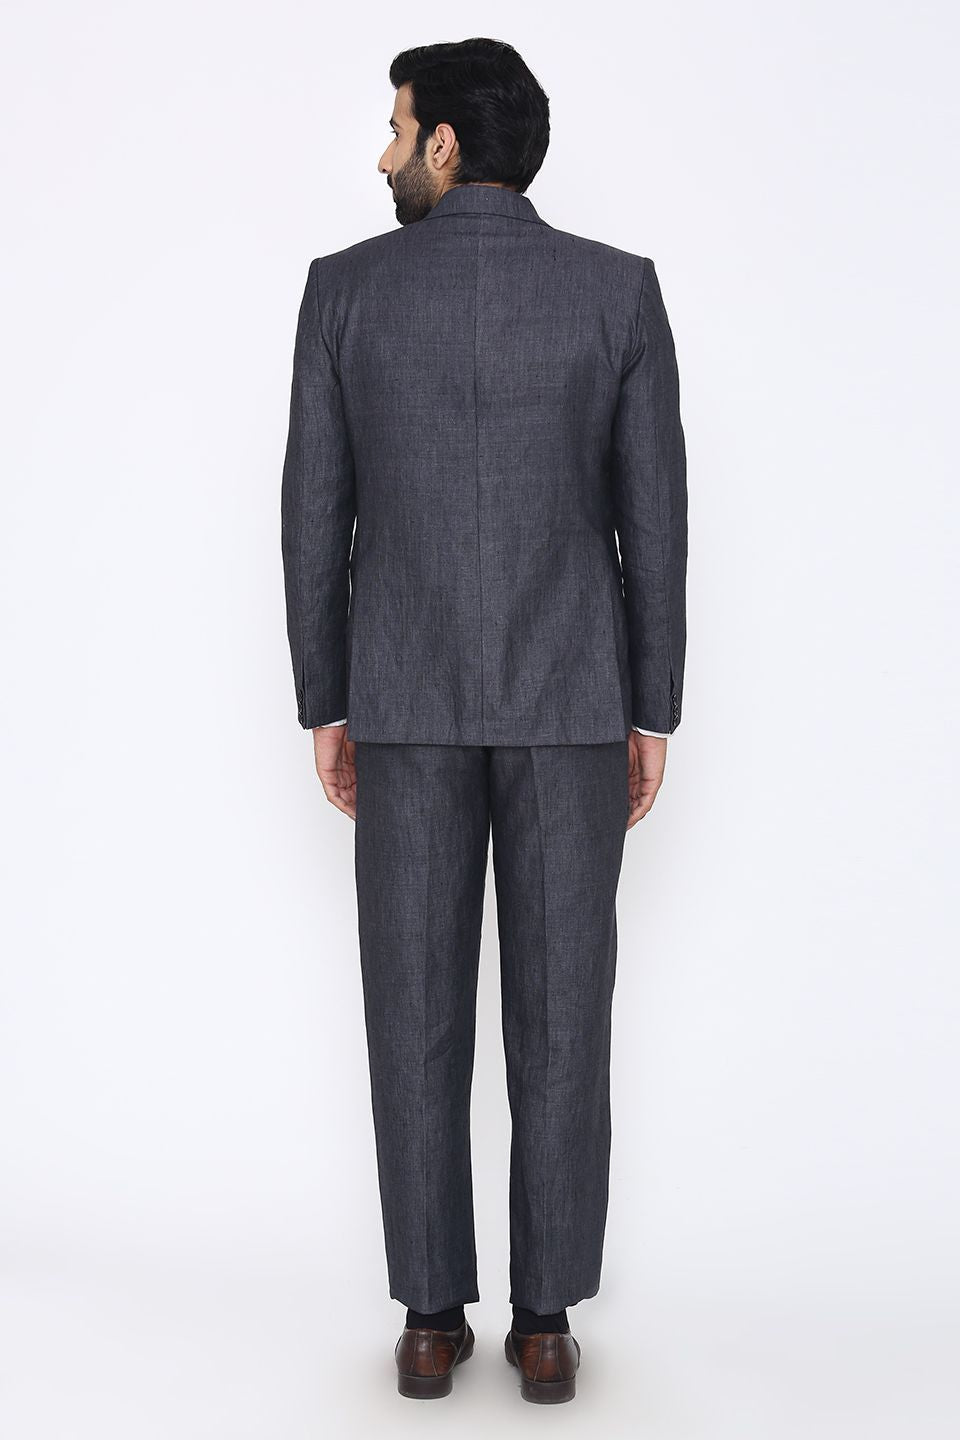 100% Linen Grey Suit